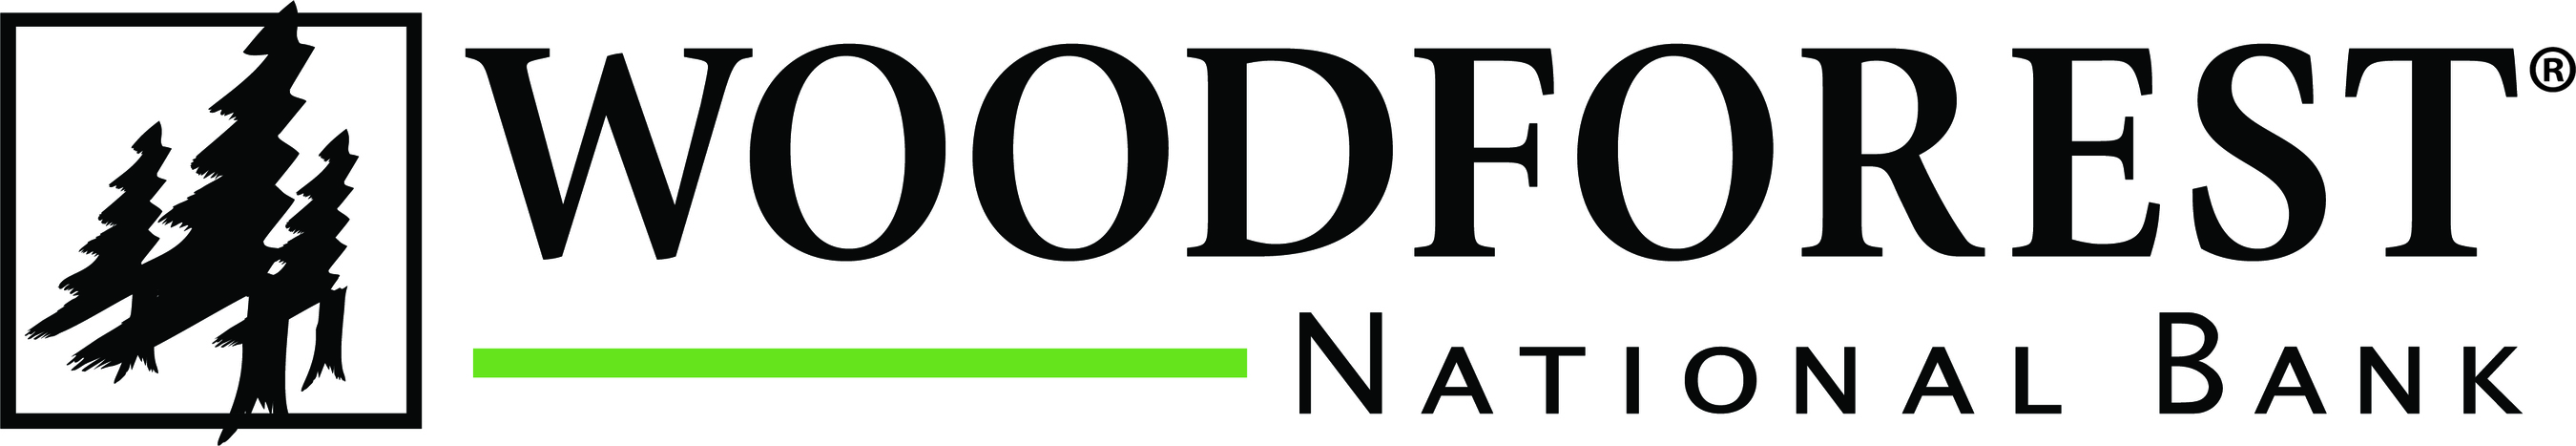 Woodforest National Bank Logo ?p=publish